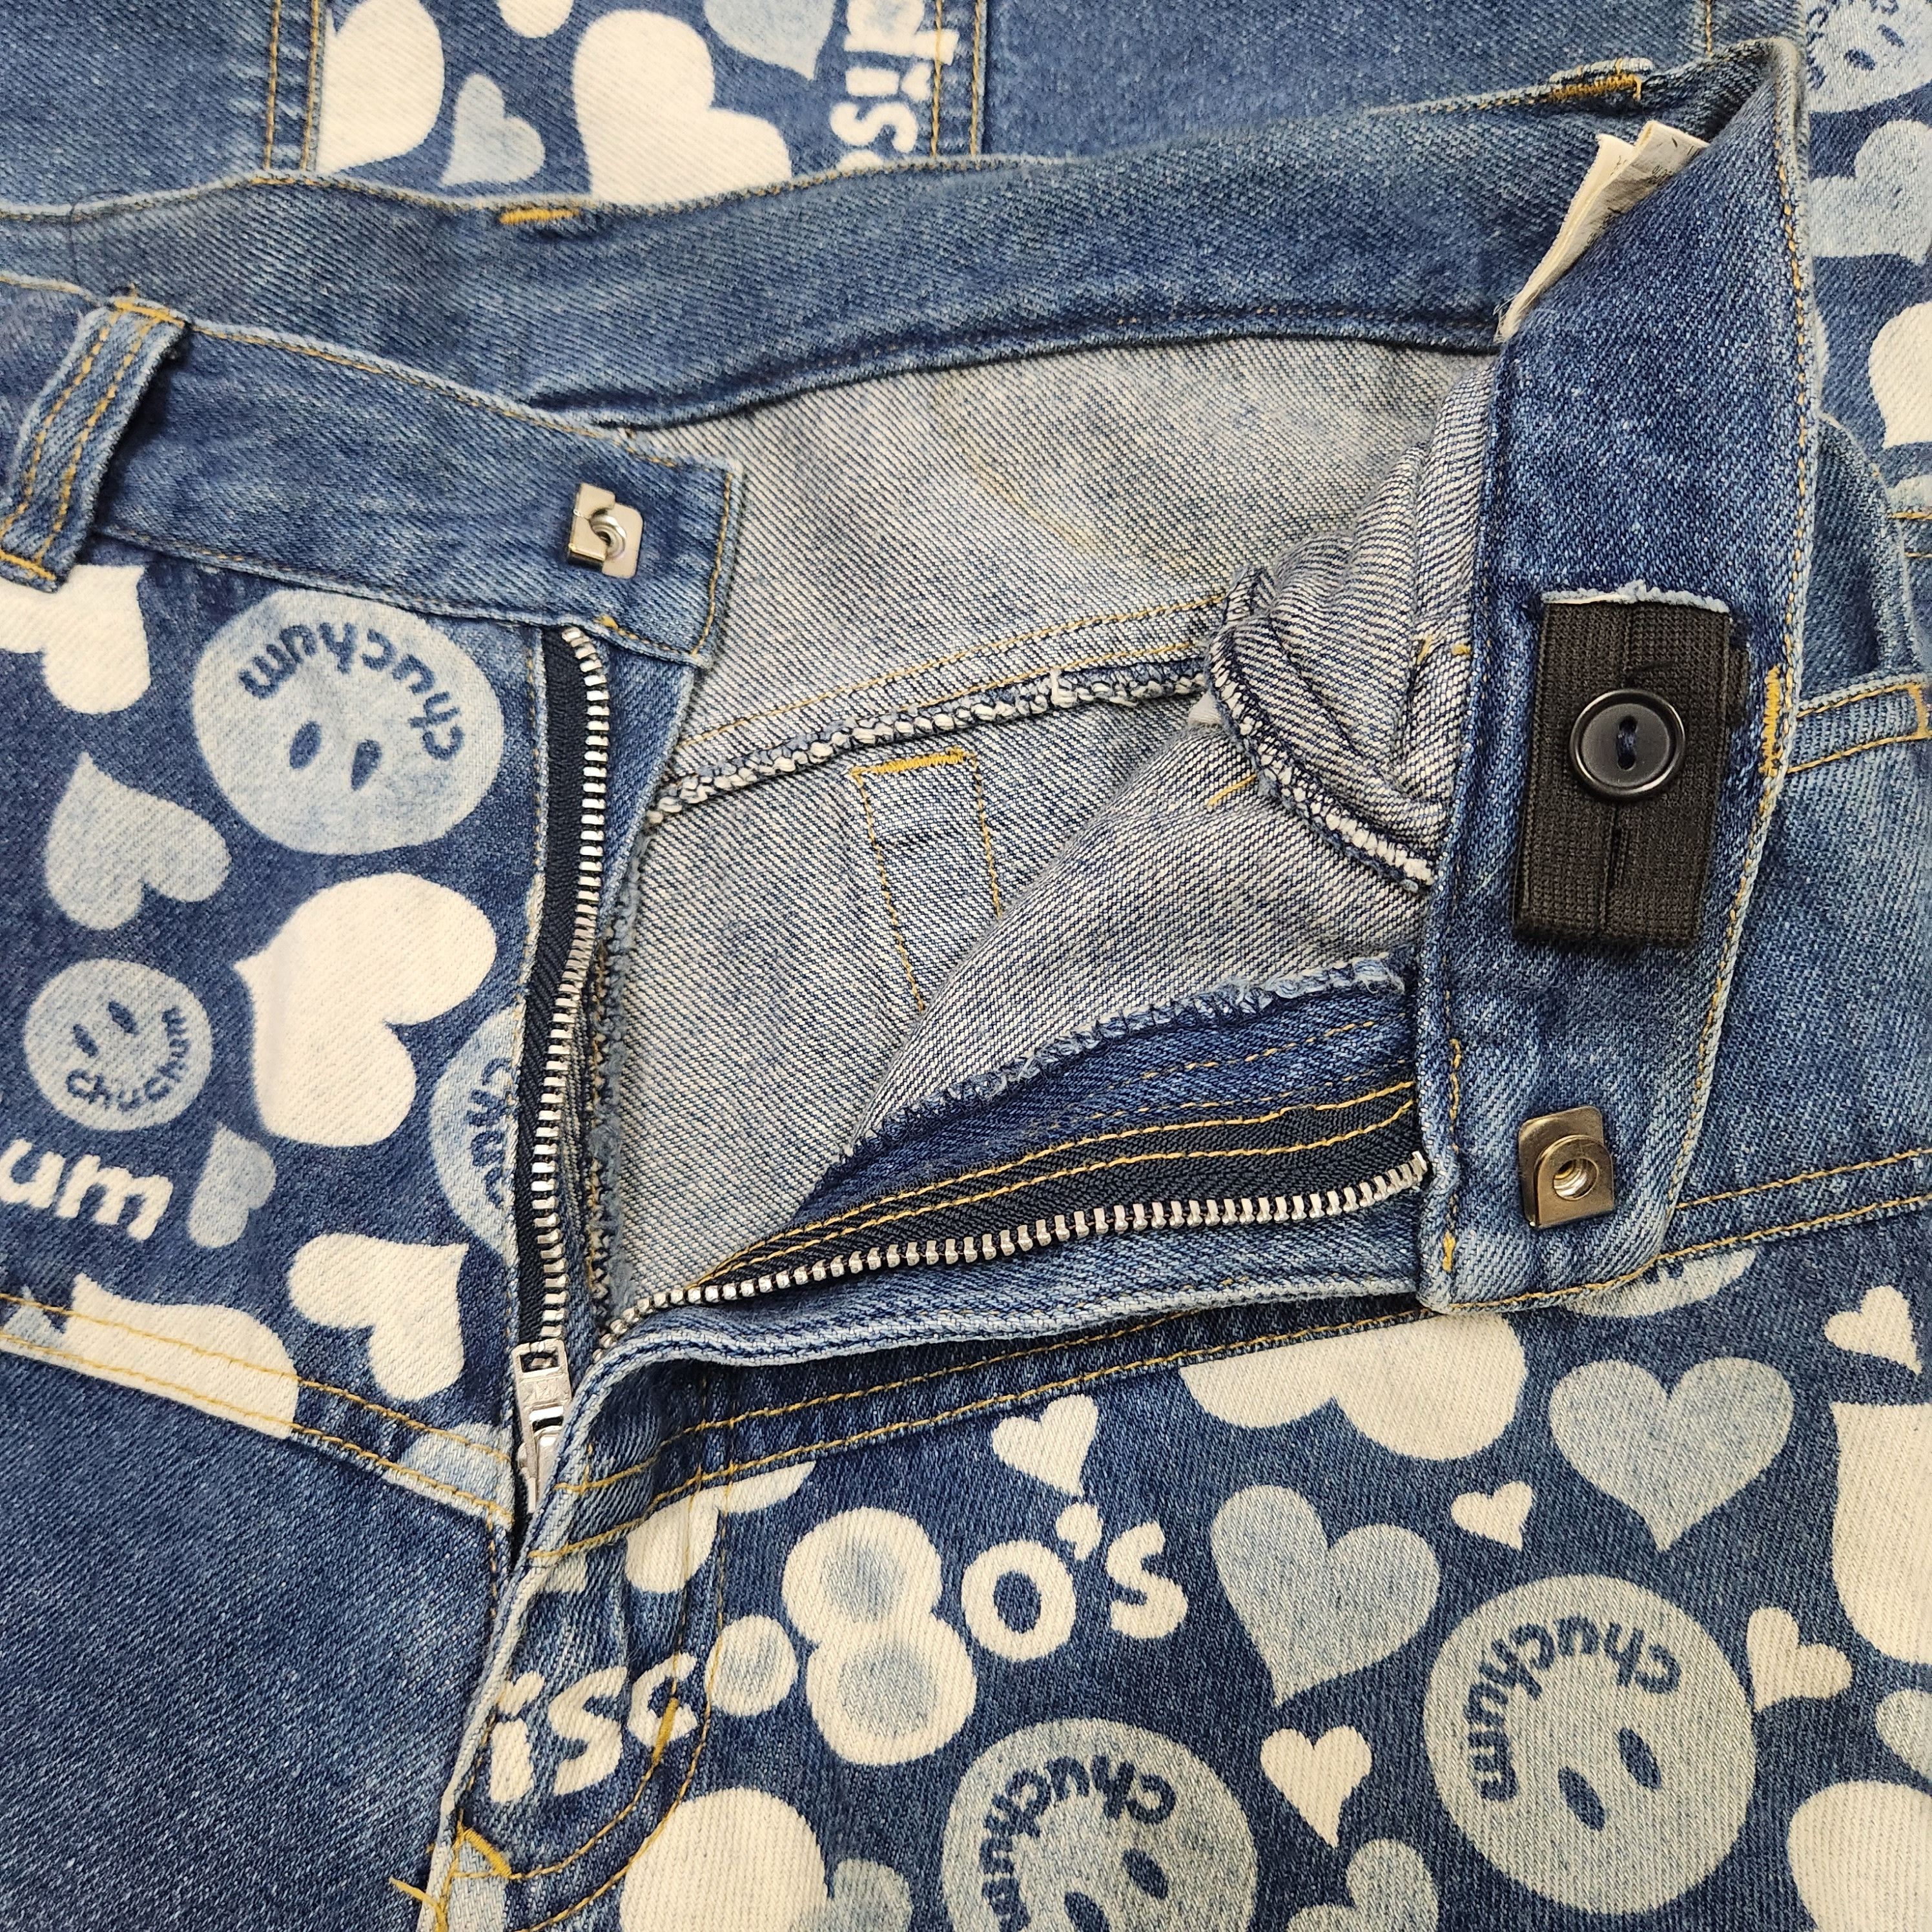 Disco 80s Chuchum Patches Denim Vintage Jeans Japan - 15